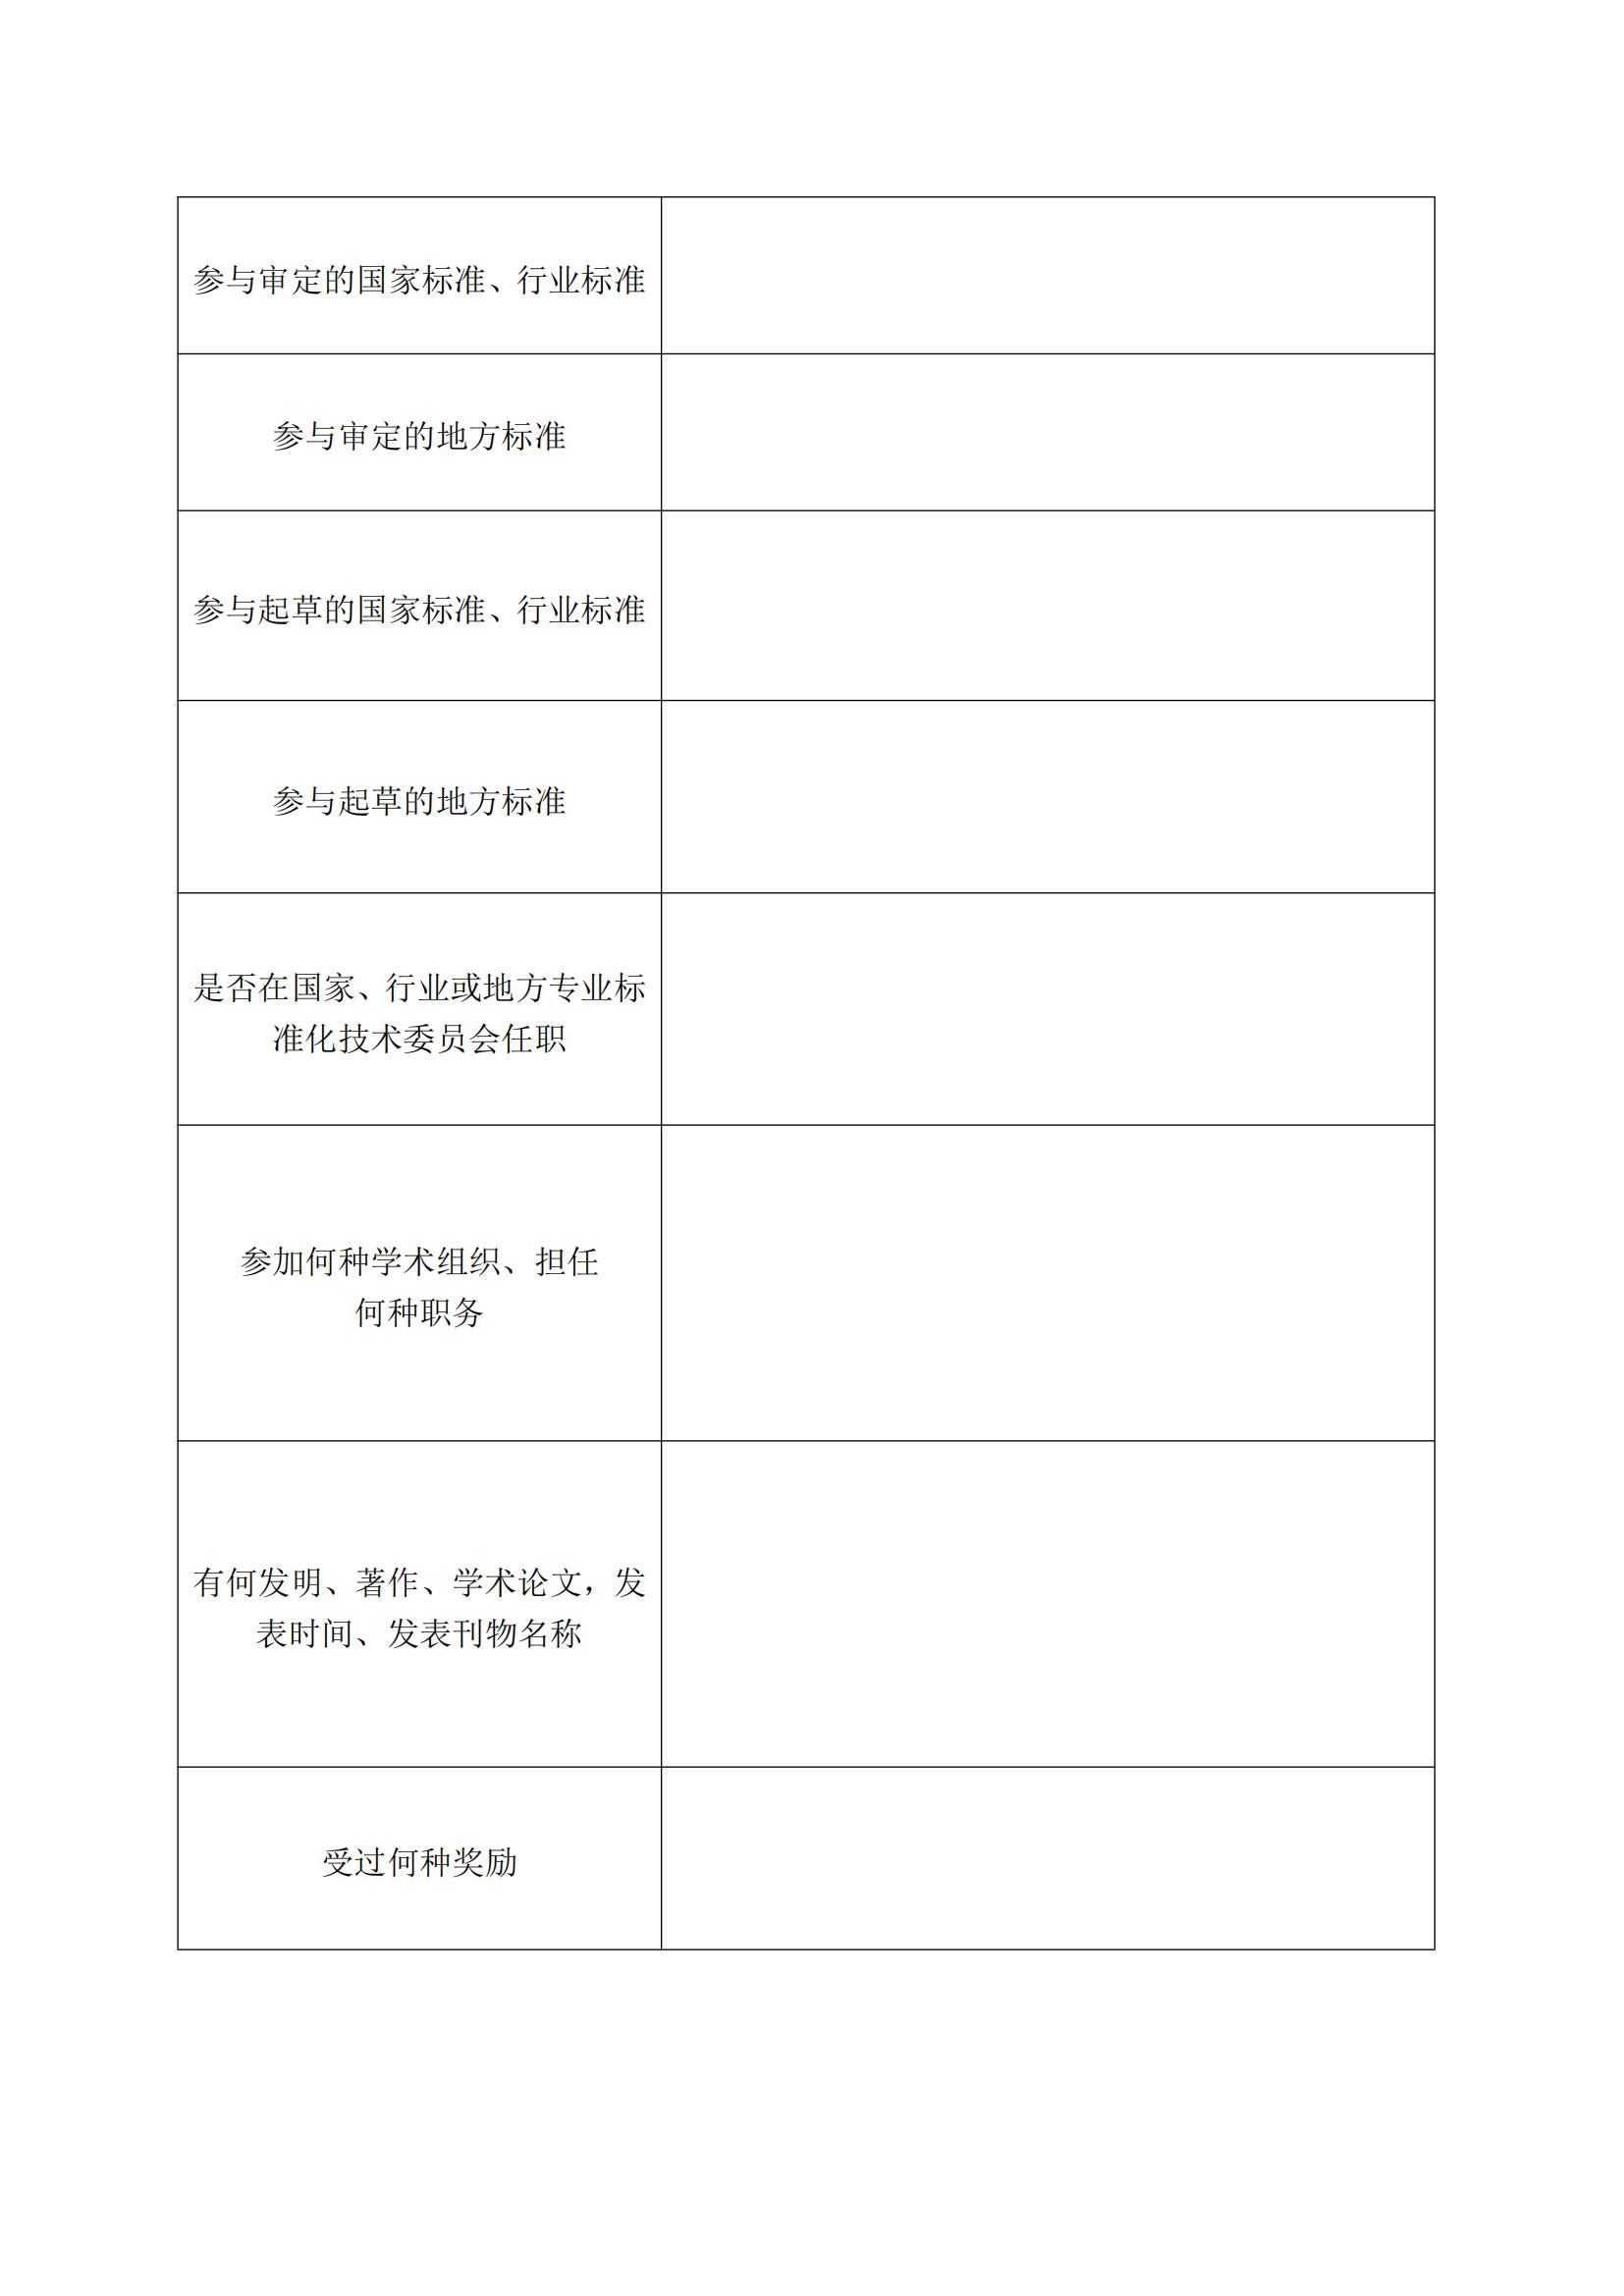 关于公开征集湖南省污染治理标准化技术委员会委员的函(1)_03.jpg